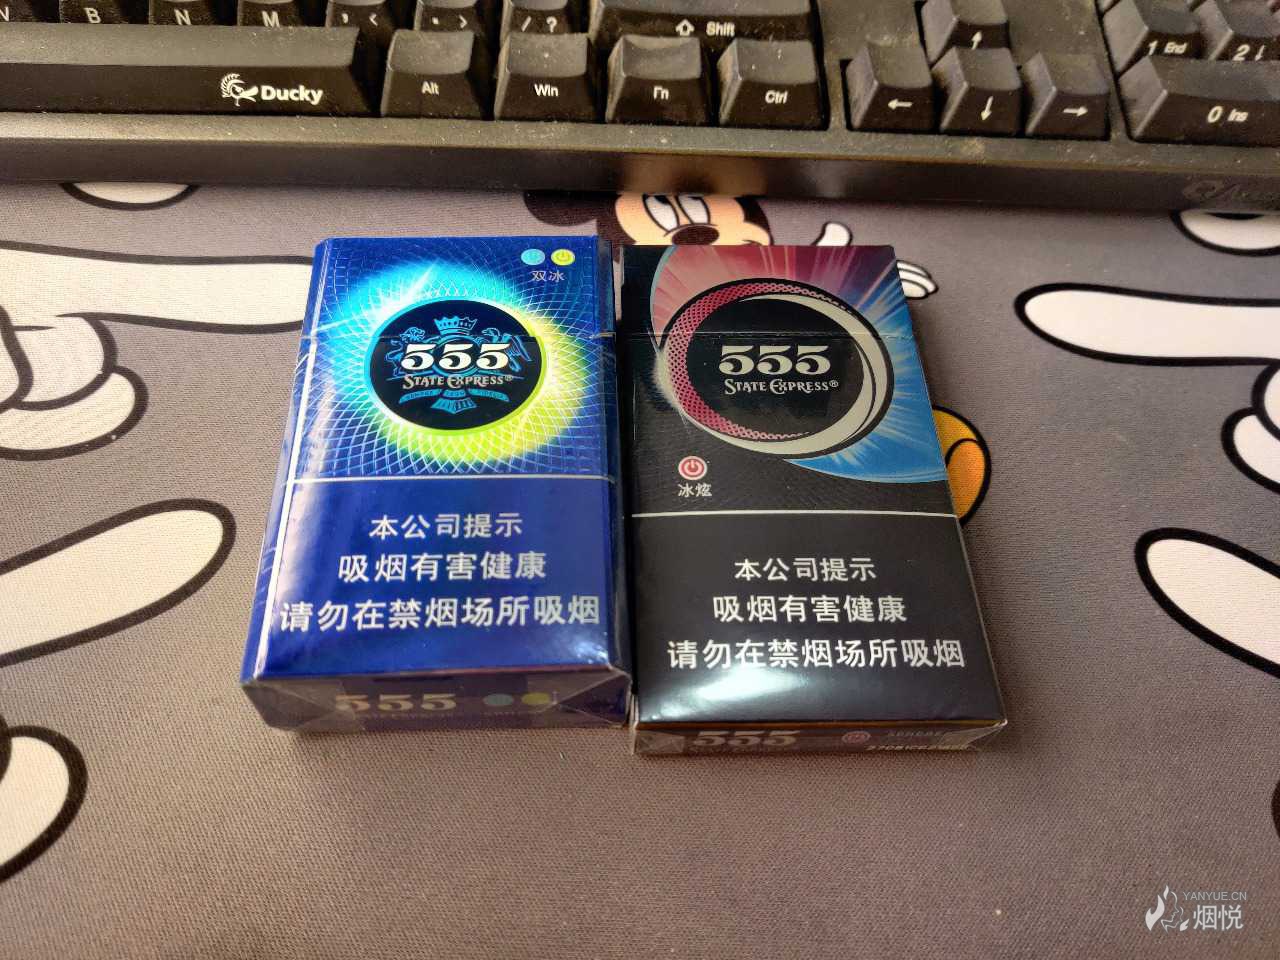 555香烟 蓝色图片